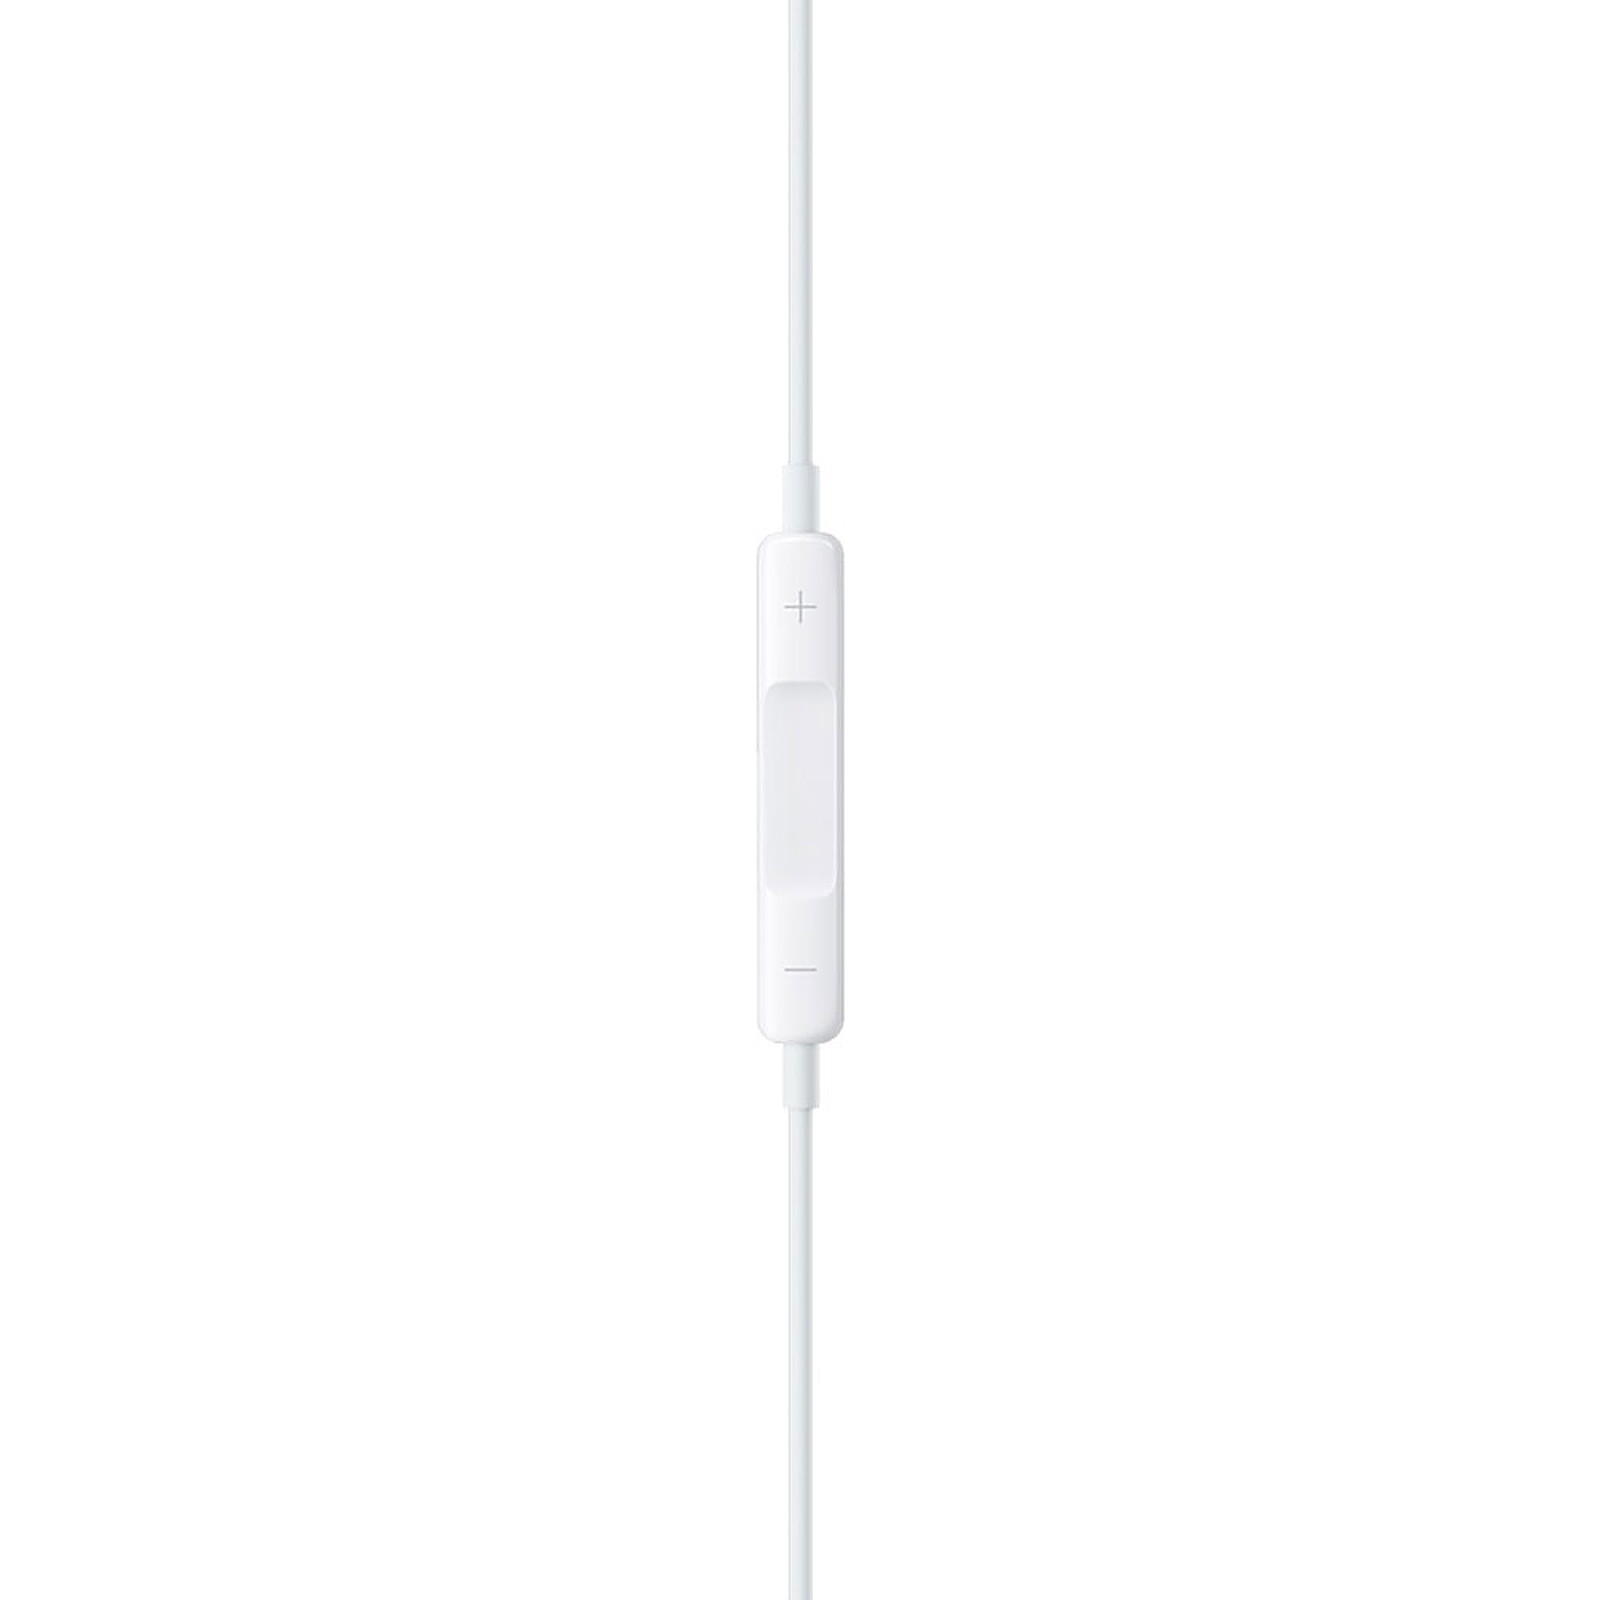 APPLE Ecouteurs EarPods avec connecteur Lightning - Blanc pas cher